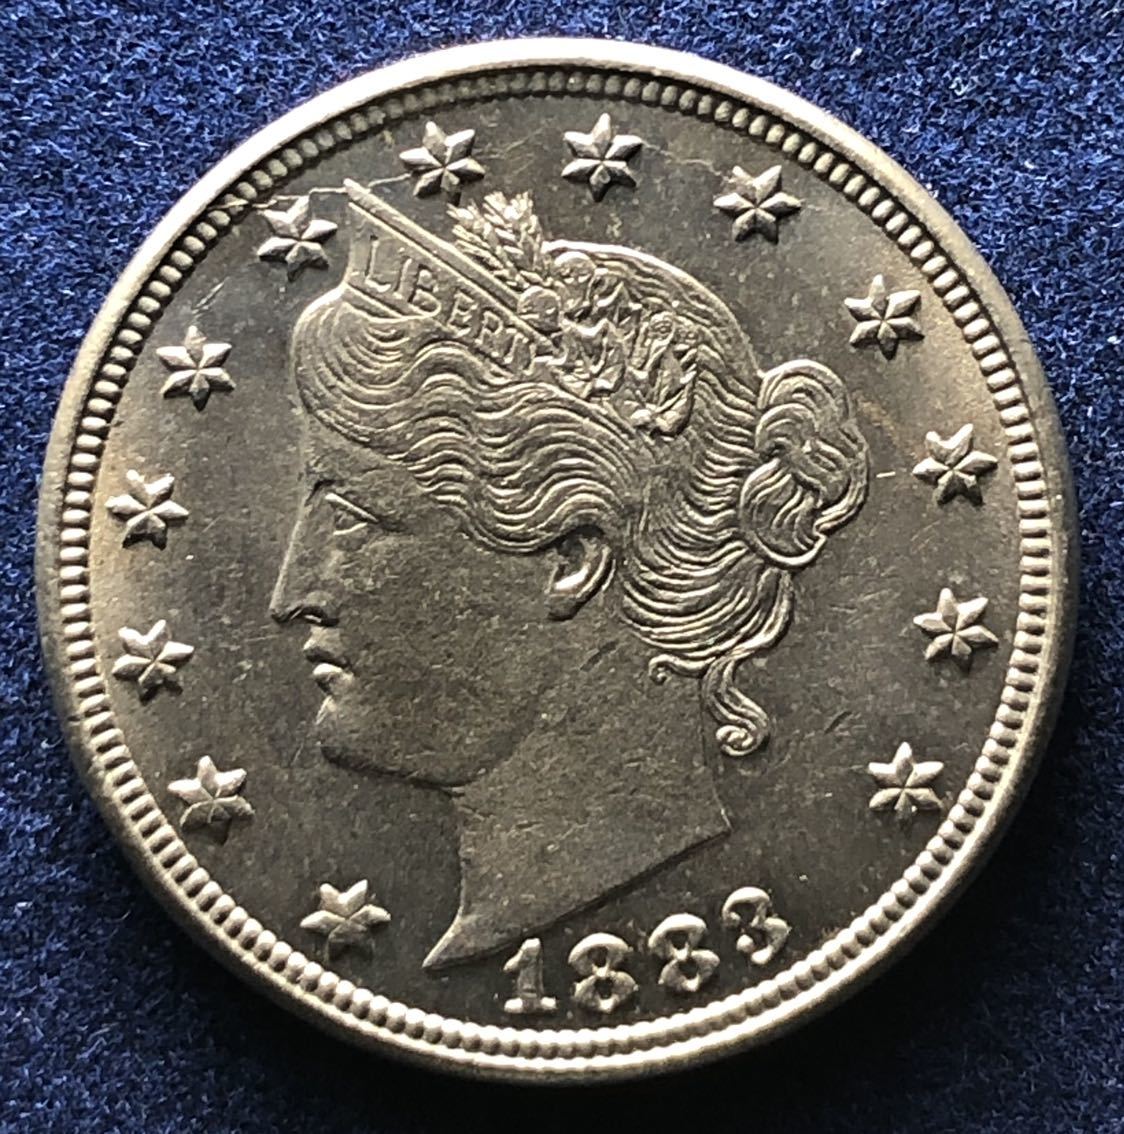  原文:アメリカ白銅貨 1883年 5セント5.0g